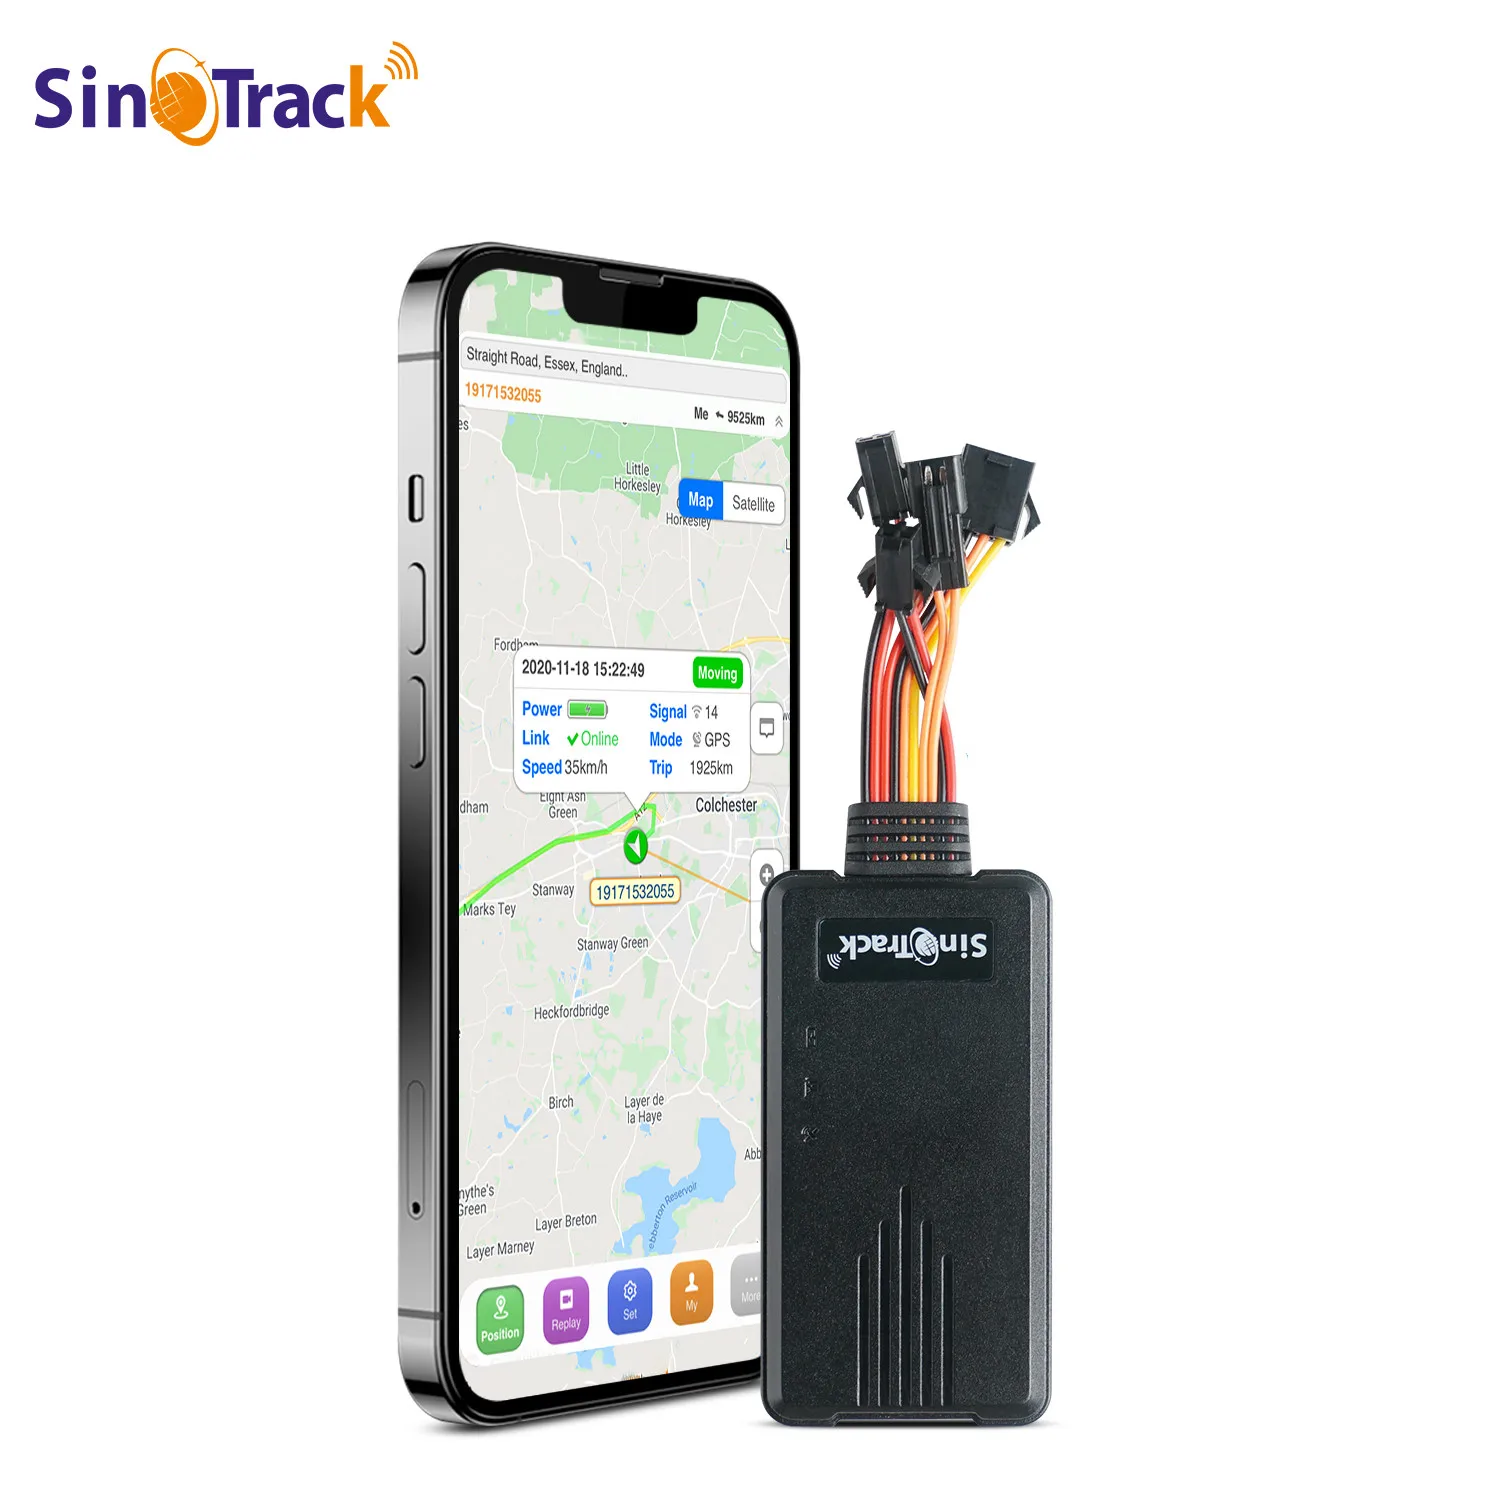 ST-906 rastreador GPS Global para coche, motocicleta, dispositivo de seguimiento de vehículos con energía de aceite cortada y software de seguimiento en línea y aplicación